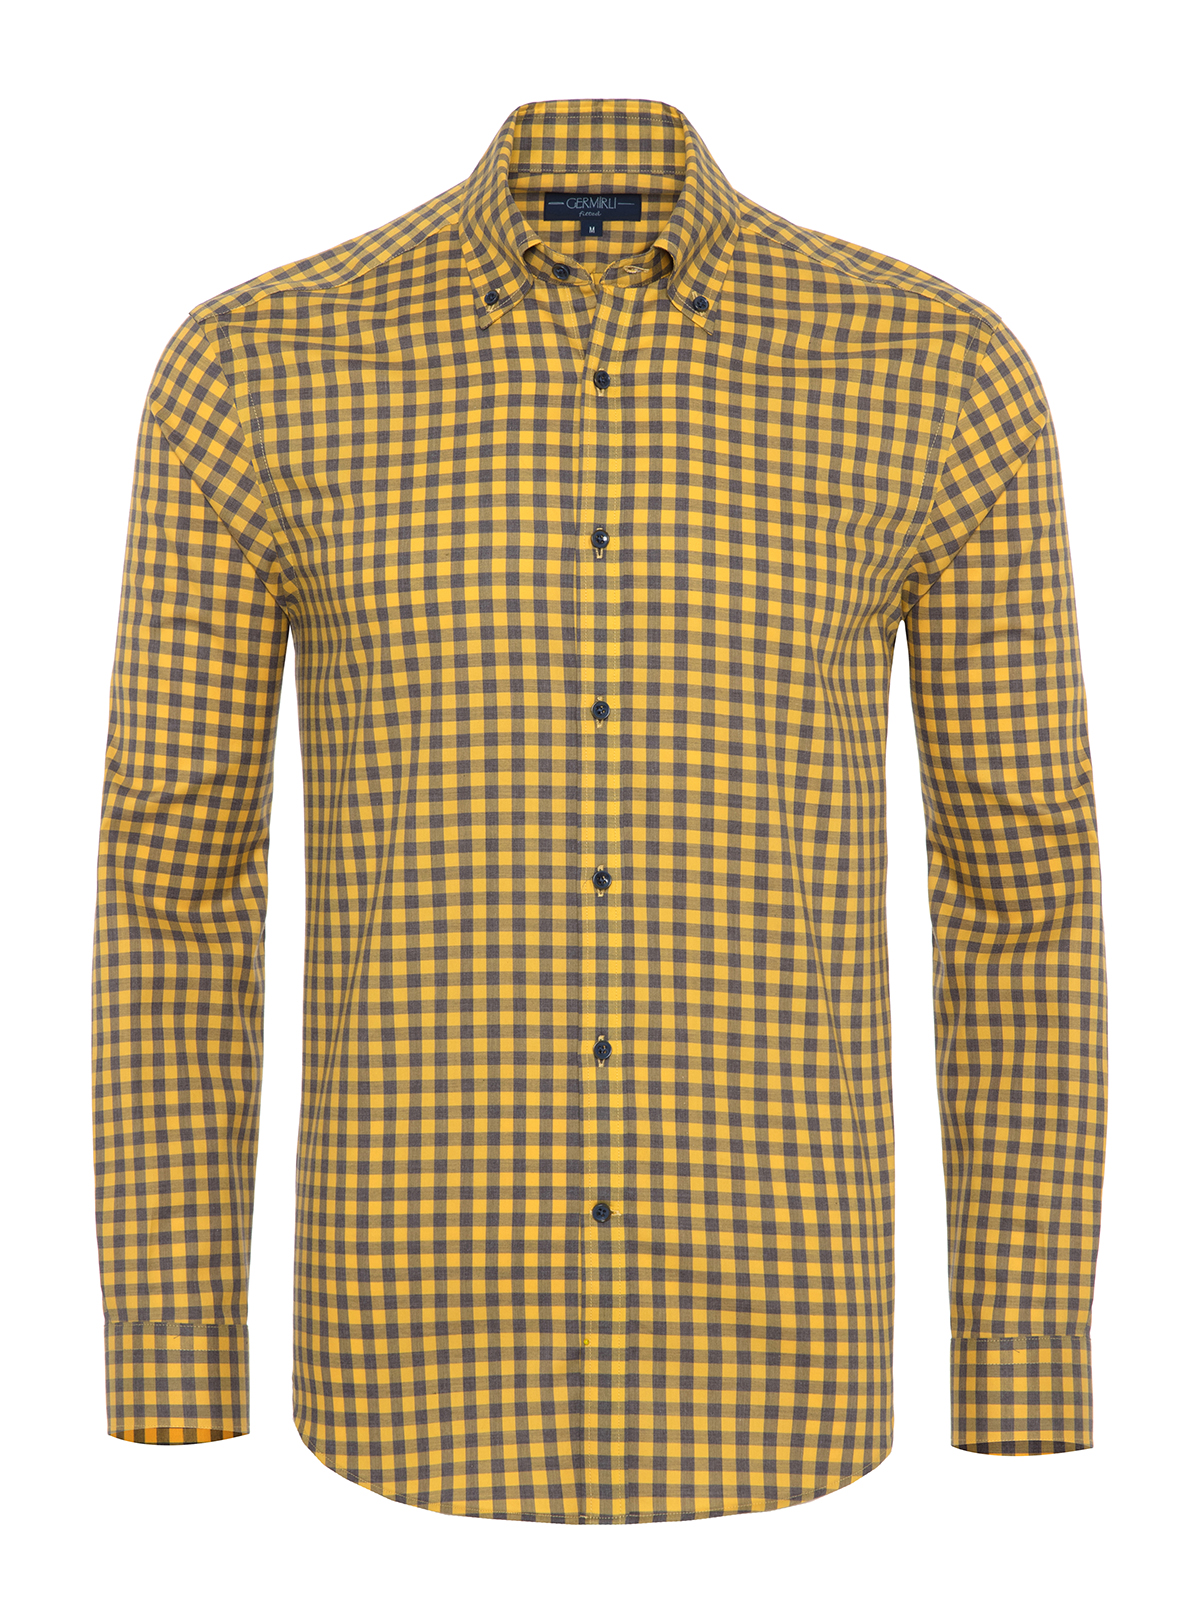 Germirli - Germirli Sarı Gri Kareli Düğmeli Yaka Tailor Fit Gömlek